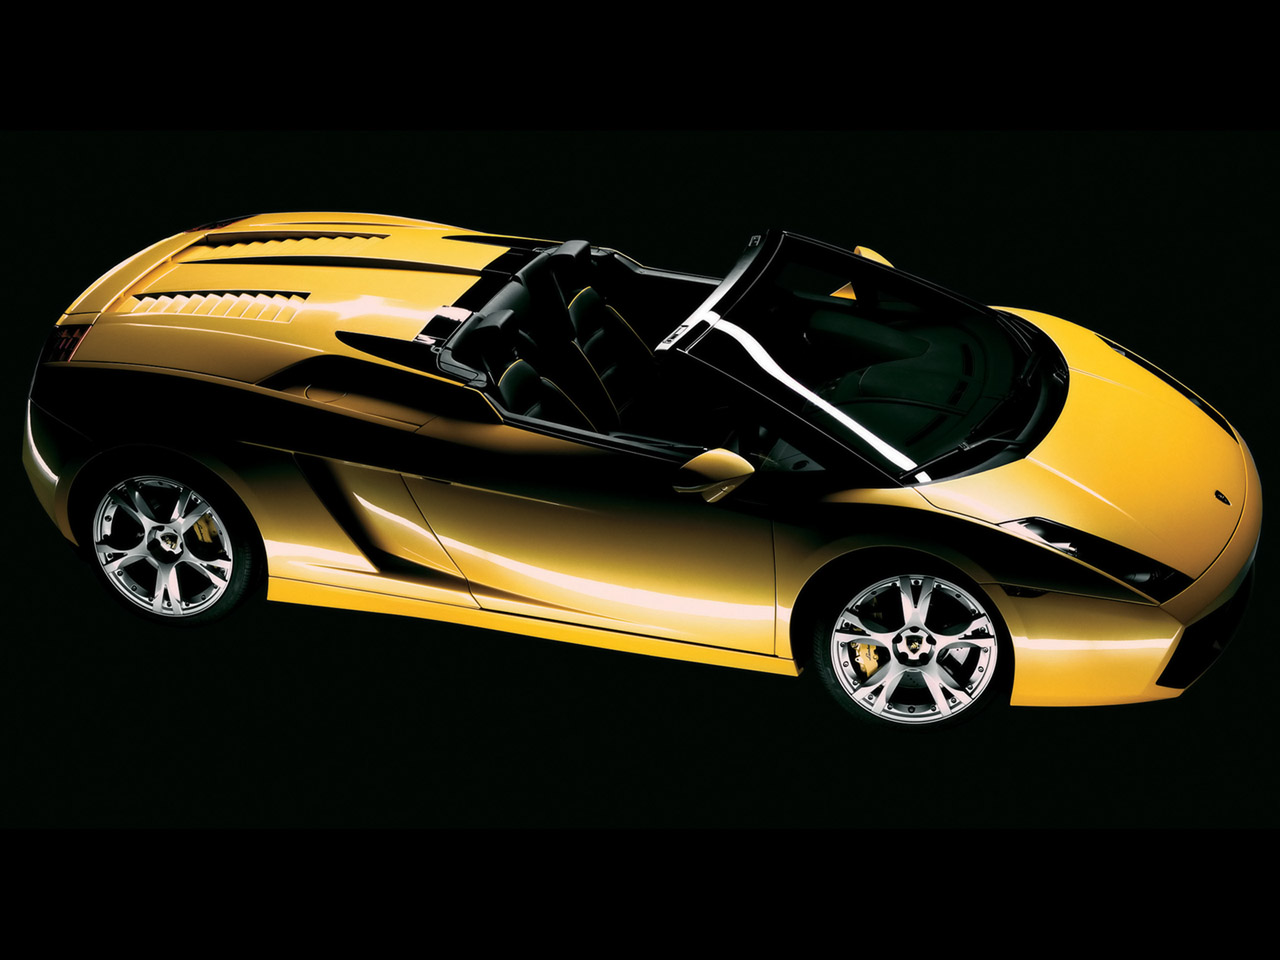 Lamborghini Gallordo Spyder